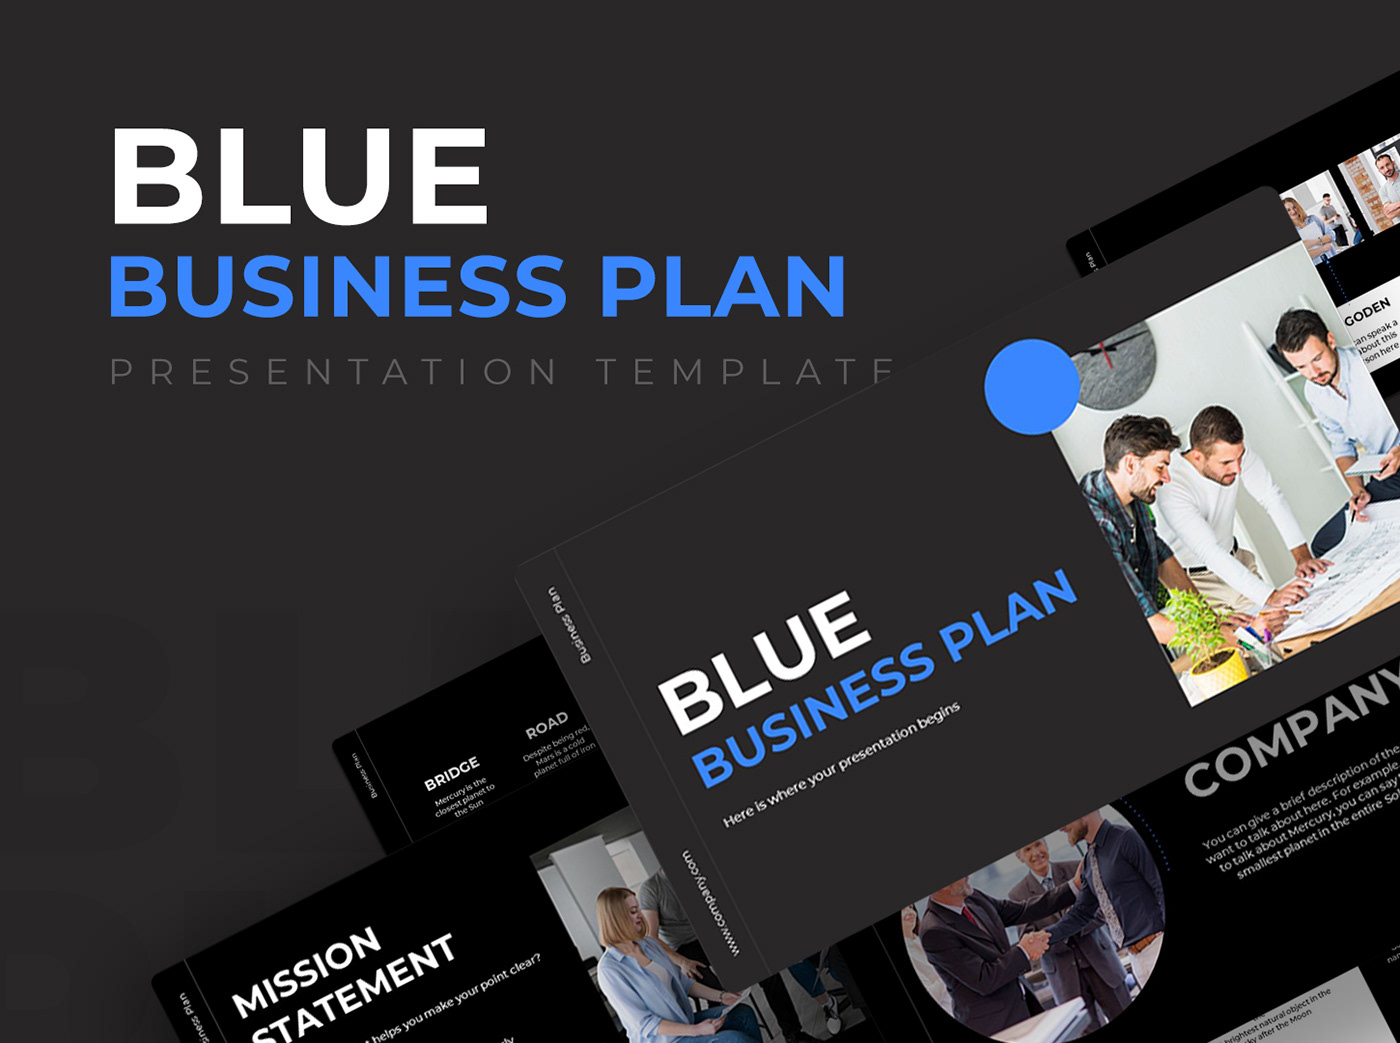 blue business plan powerpoint busness plan dark marketing   pitch Powerpoint PPT presentation presentation design